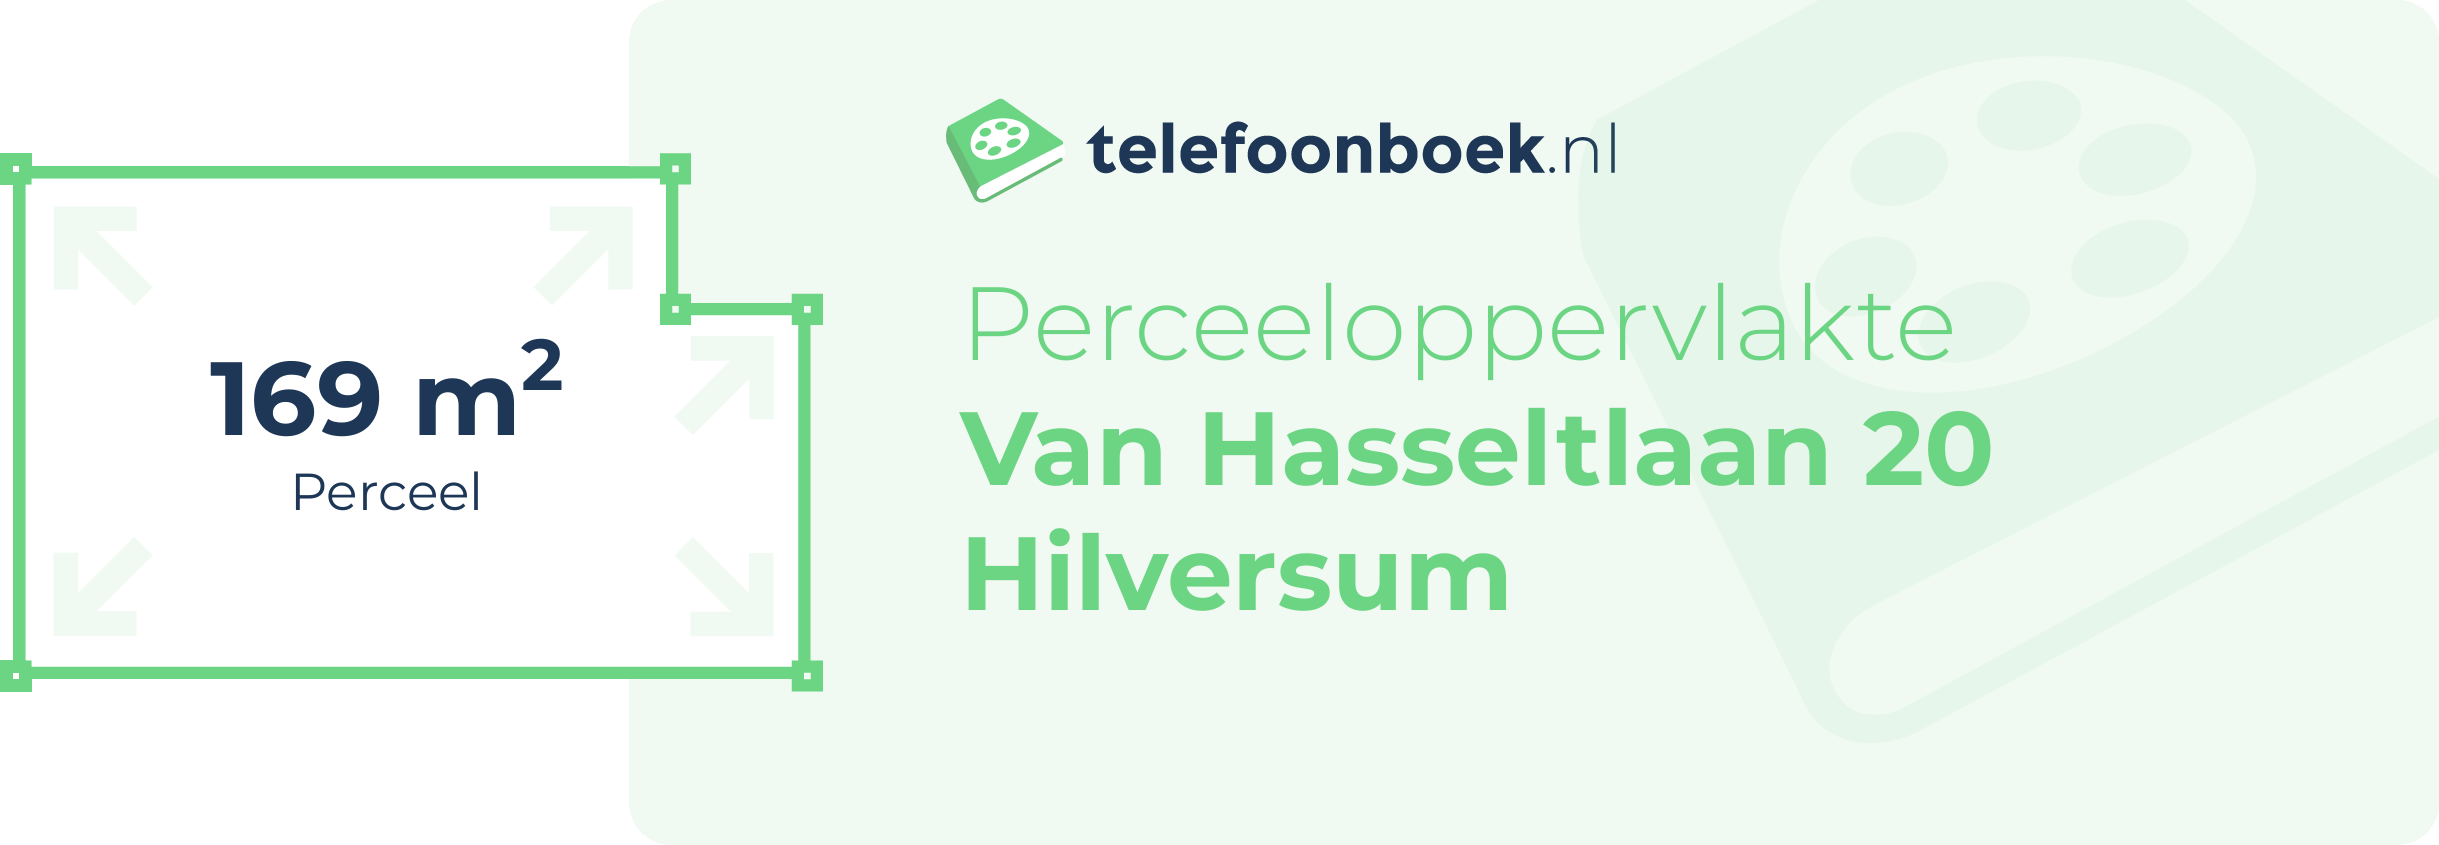 Perceeloppervlakte Van Hasseltlaan 20 Hilversum